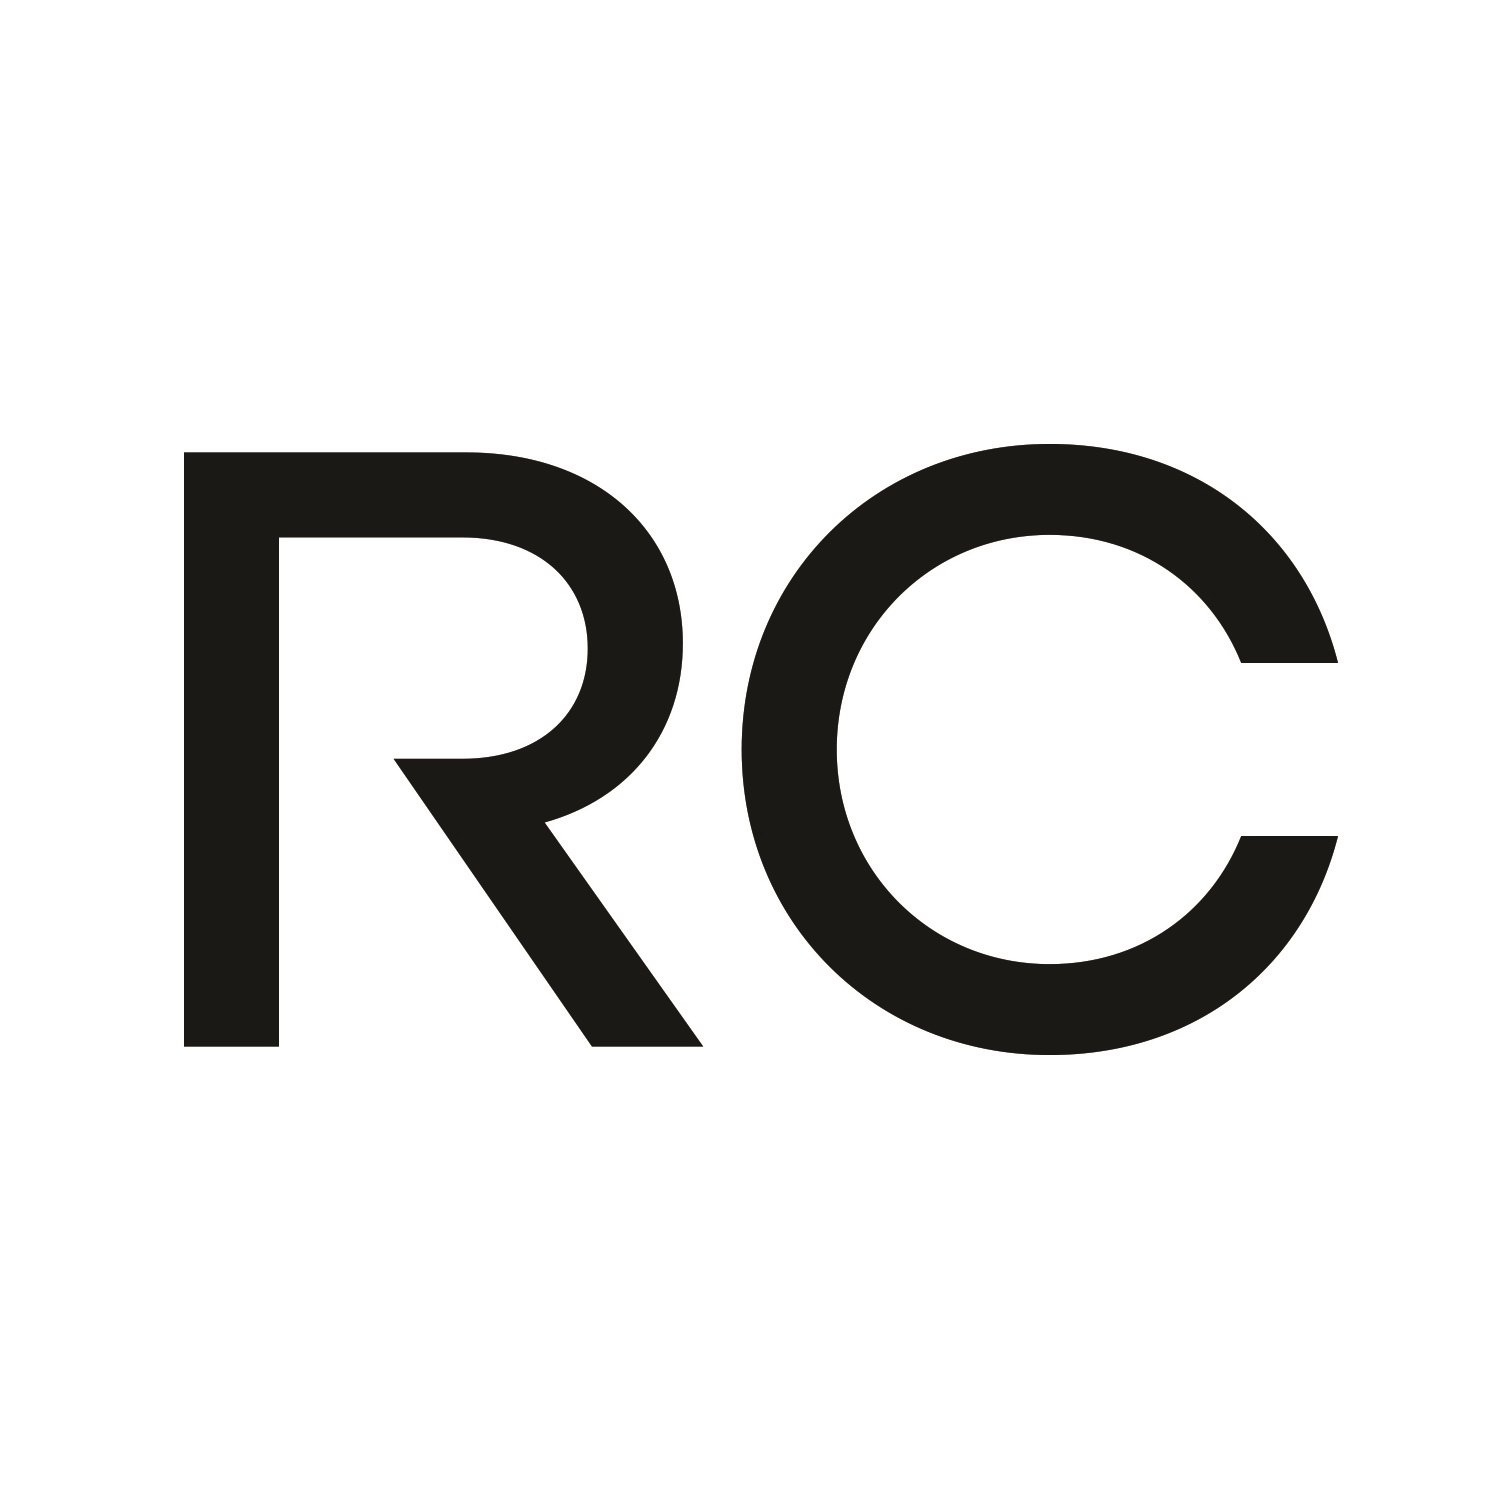 Trademark Logo RC